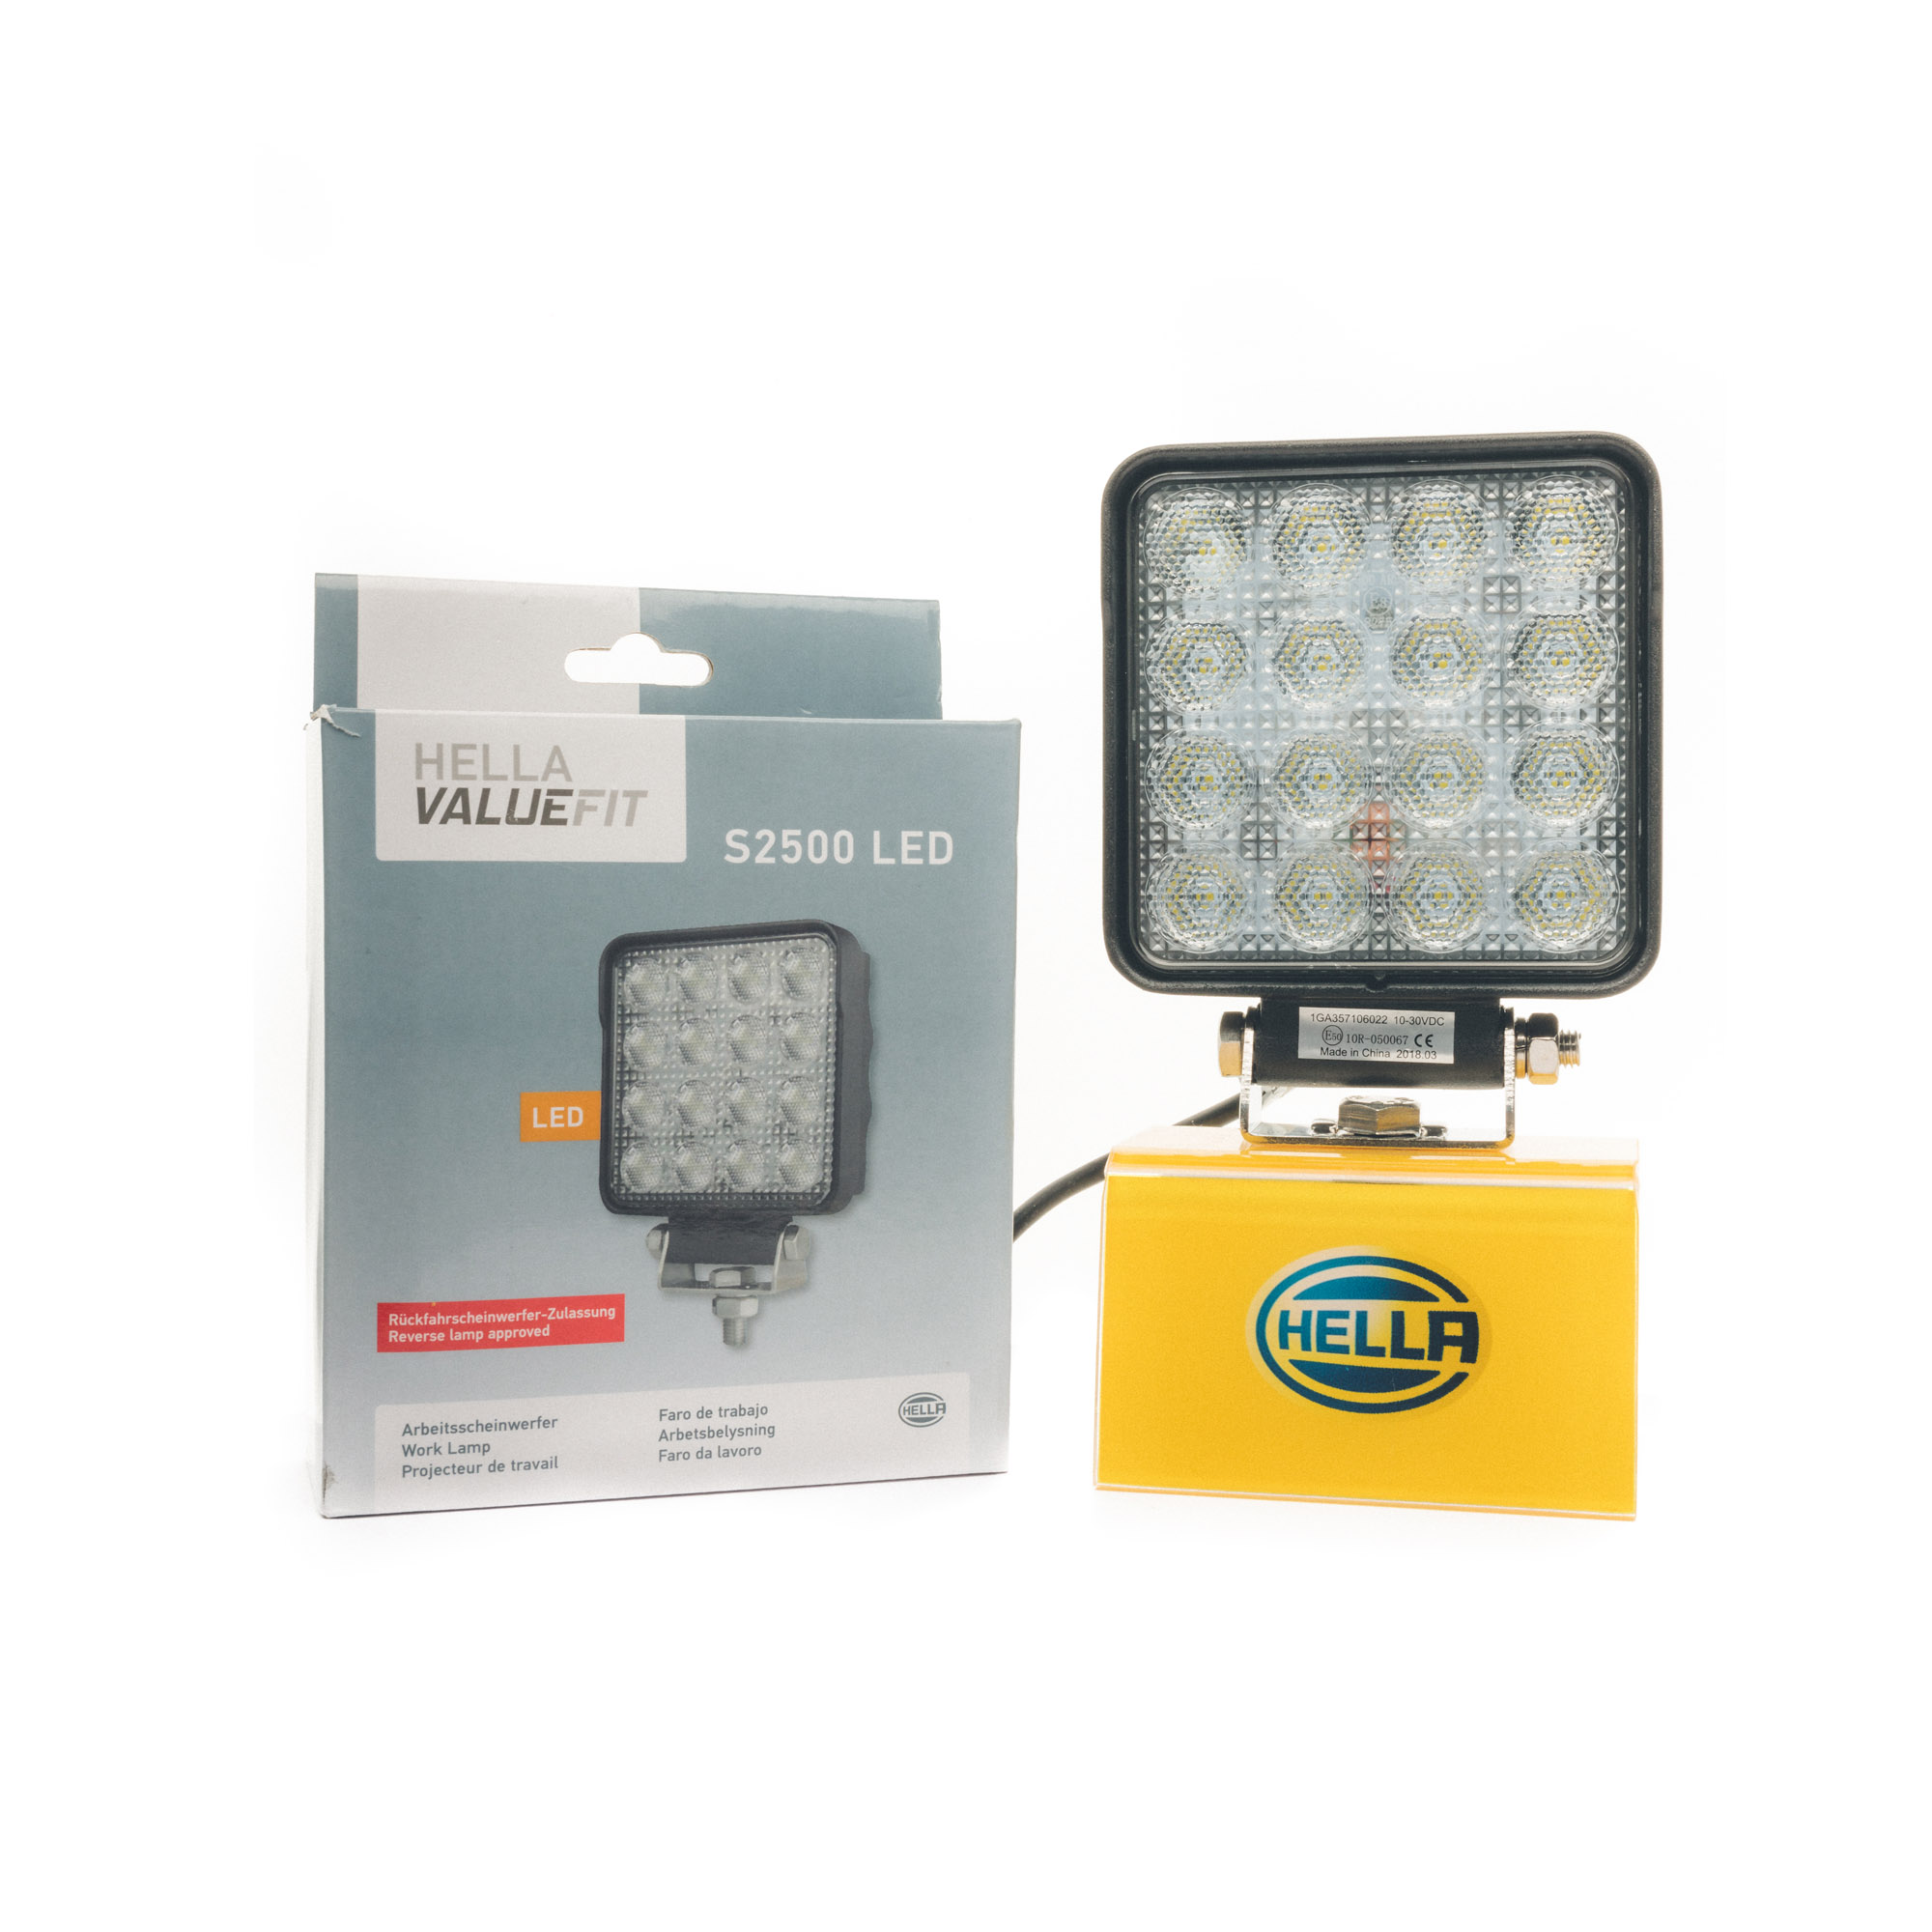 HELLA Valuefit S2500 LED Work Light - 1GA 357 106 022